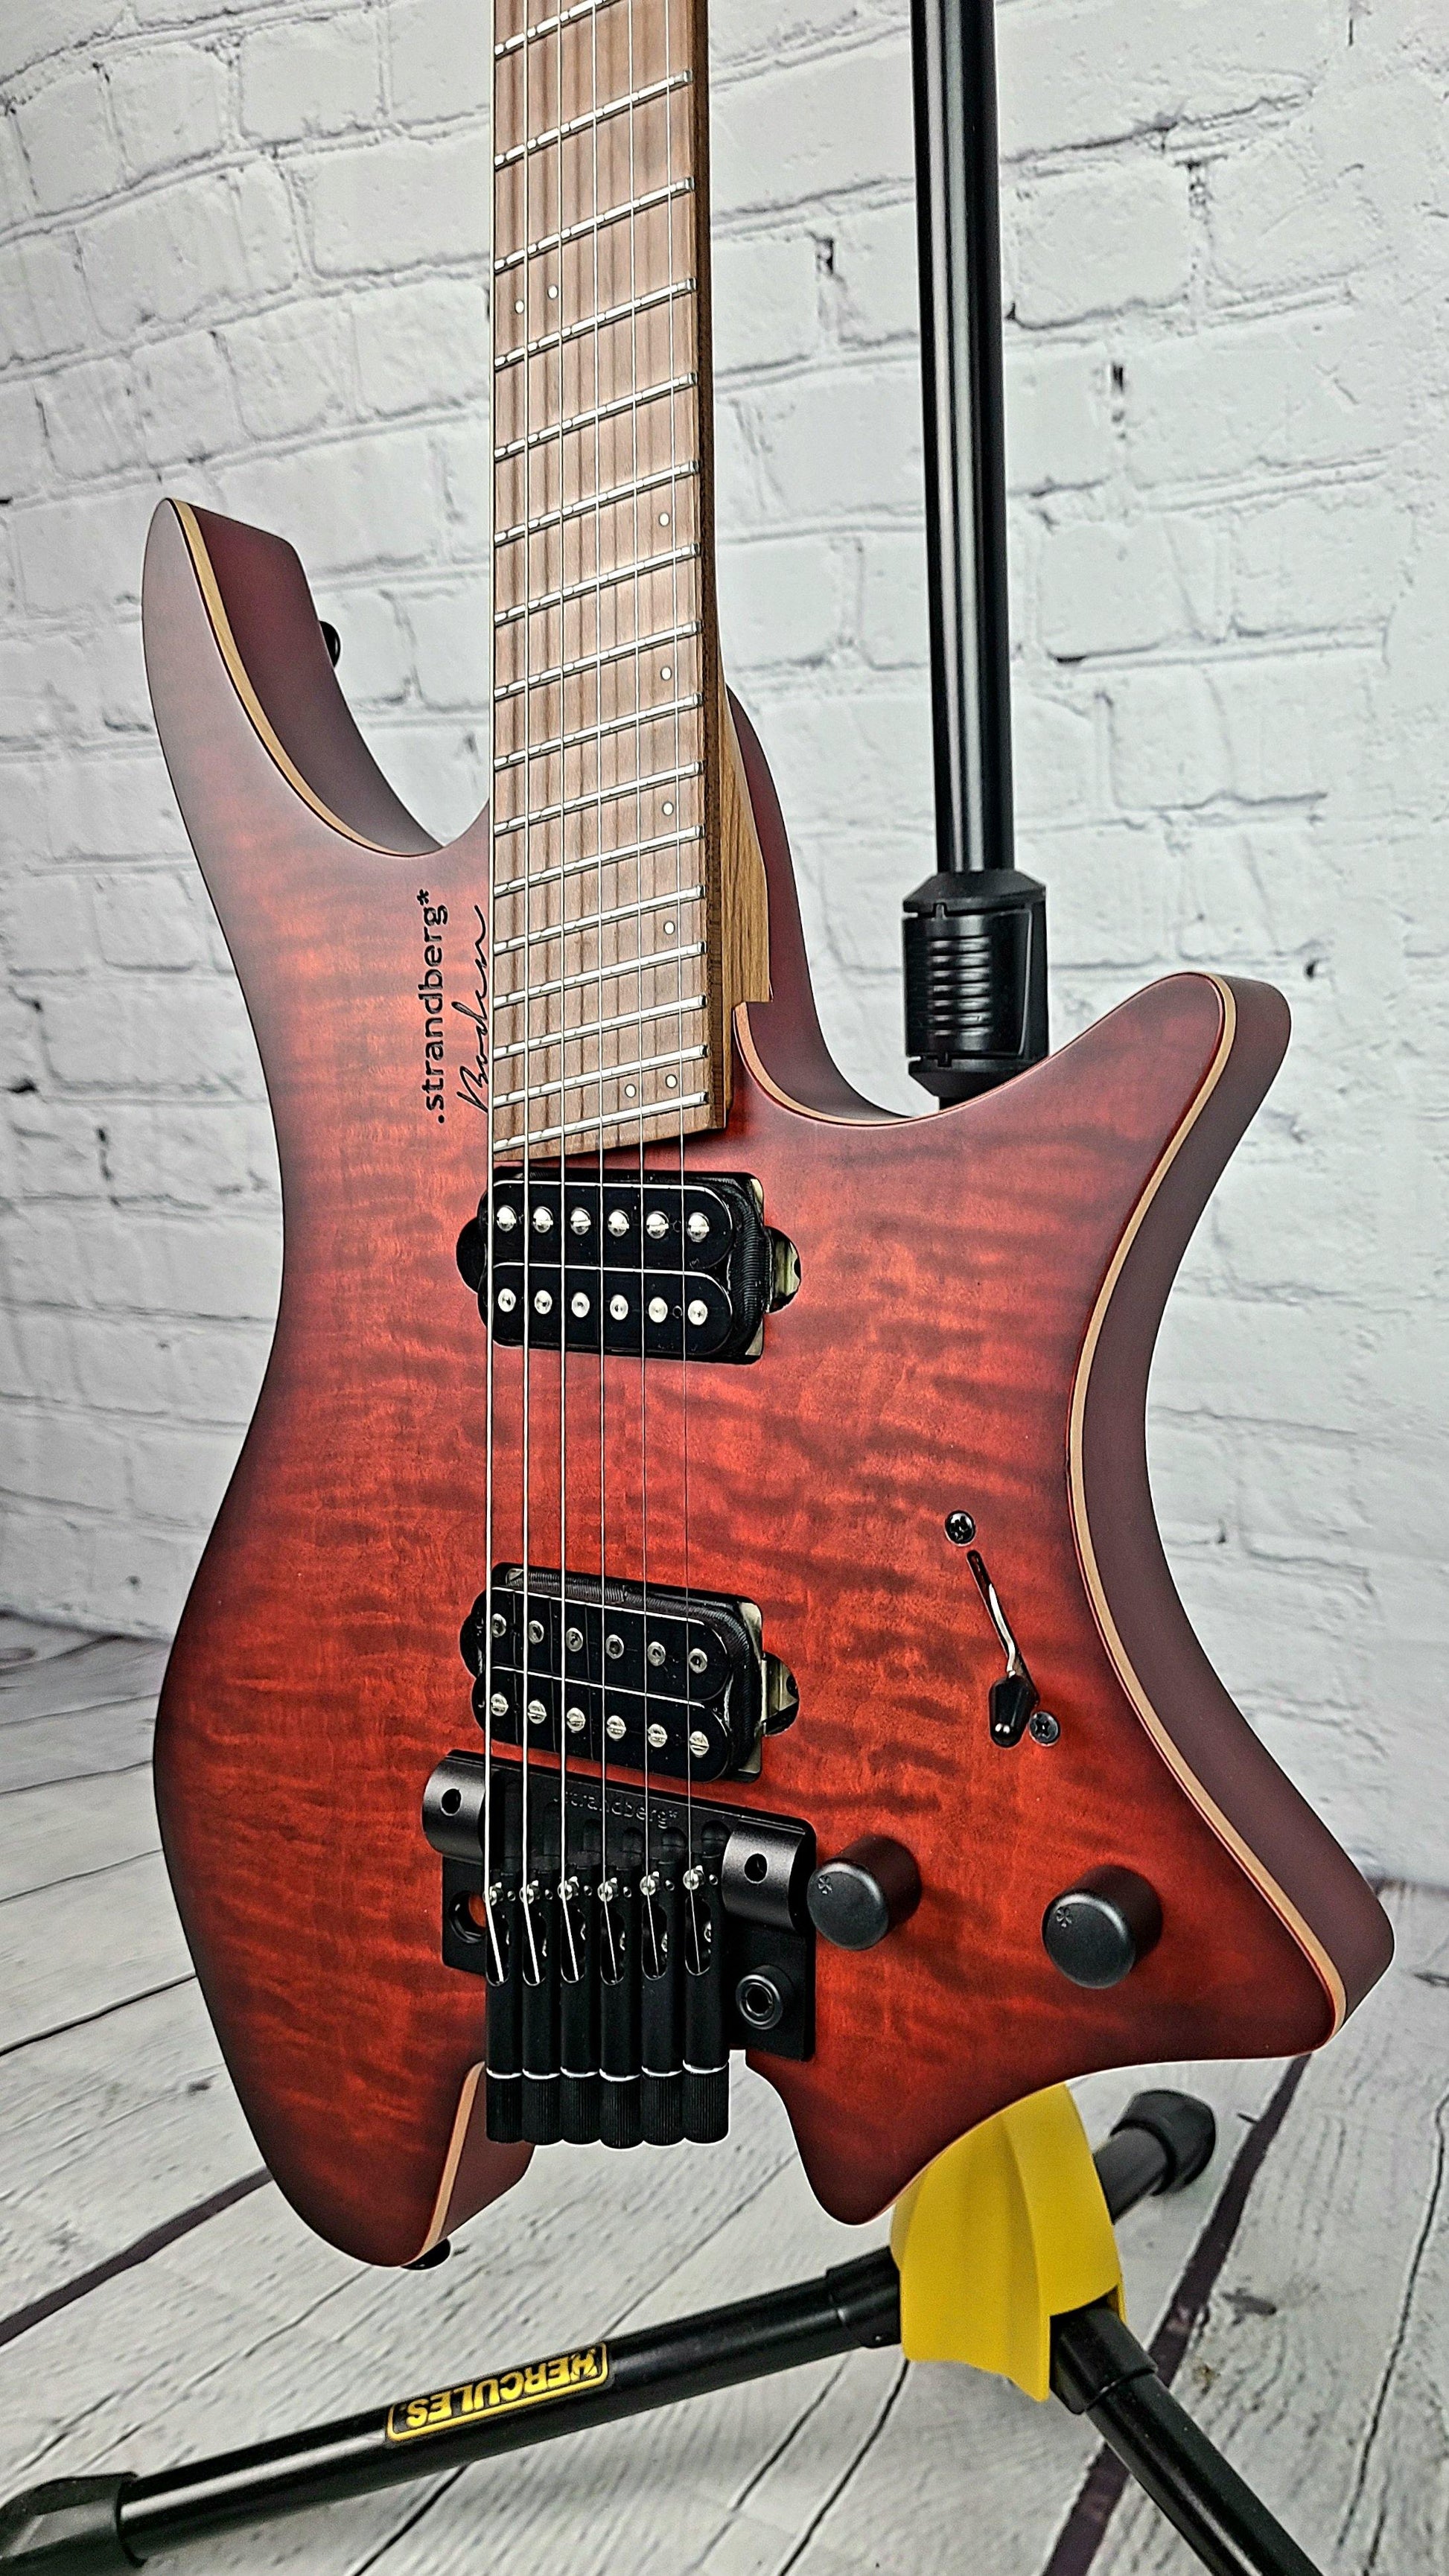 Strandberg Boden 6 Standard Tremolo Dala LE Limited Edition 1 of 100 Worldwide (C2105082) - Guitar Brando